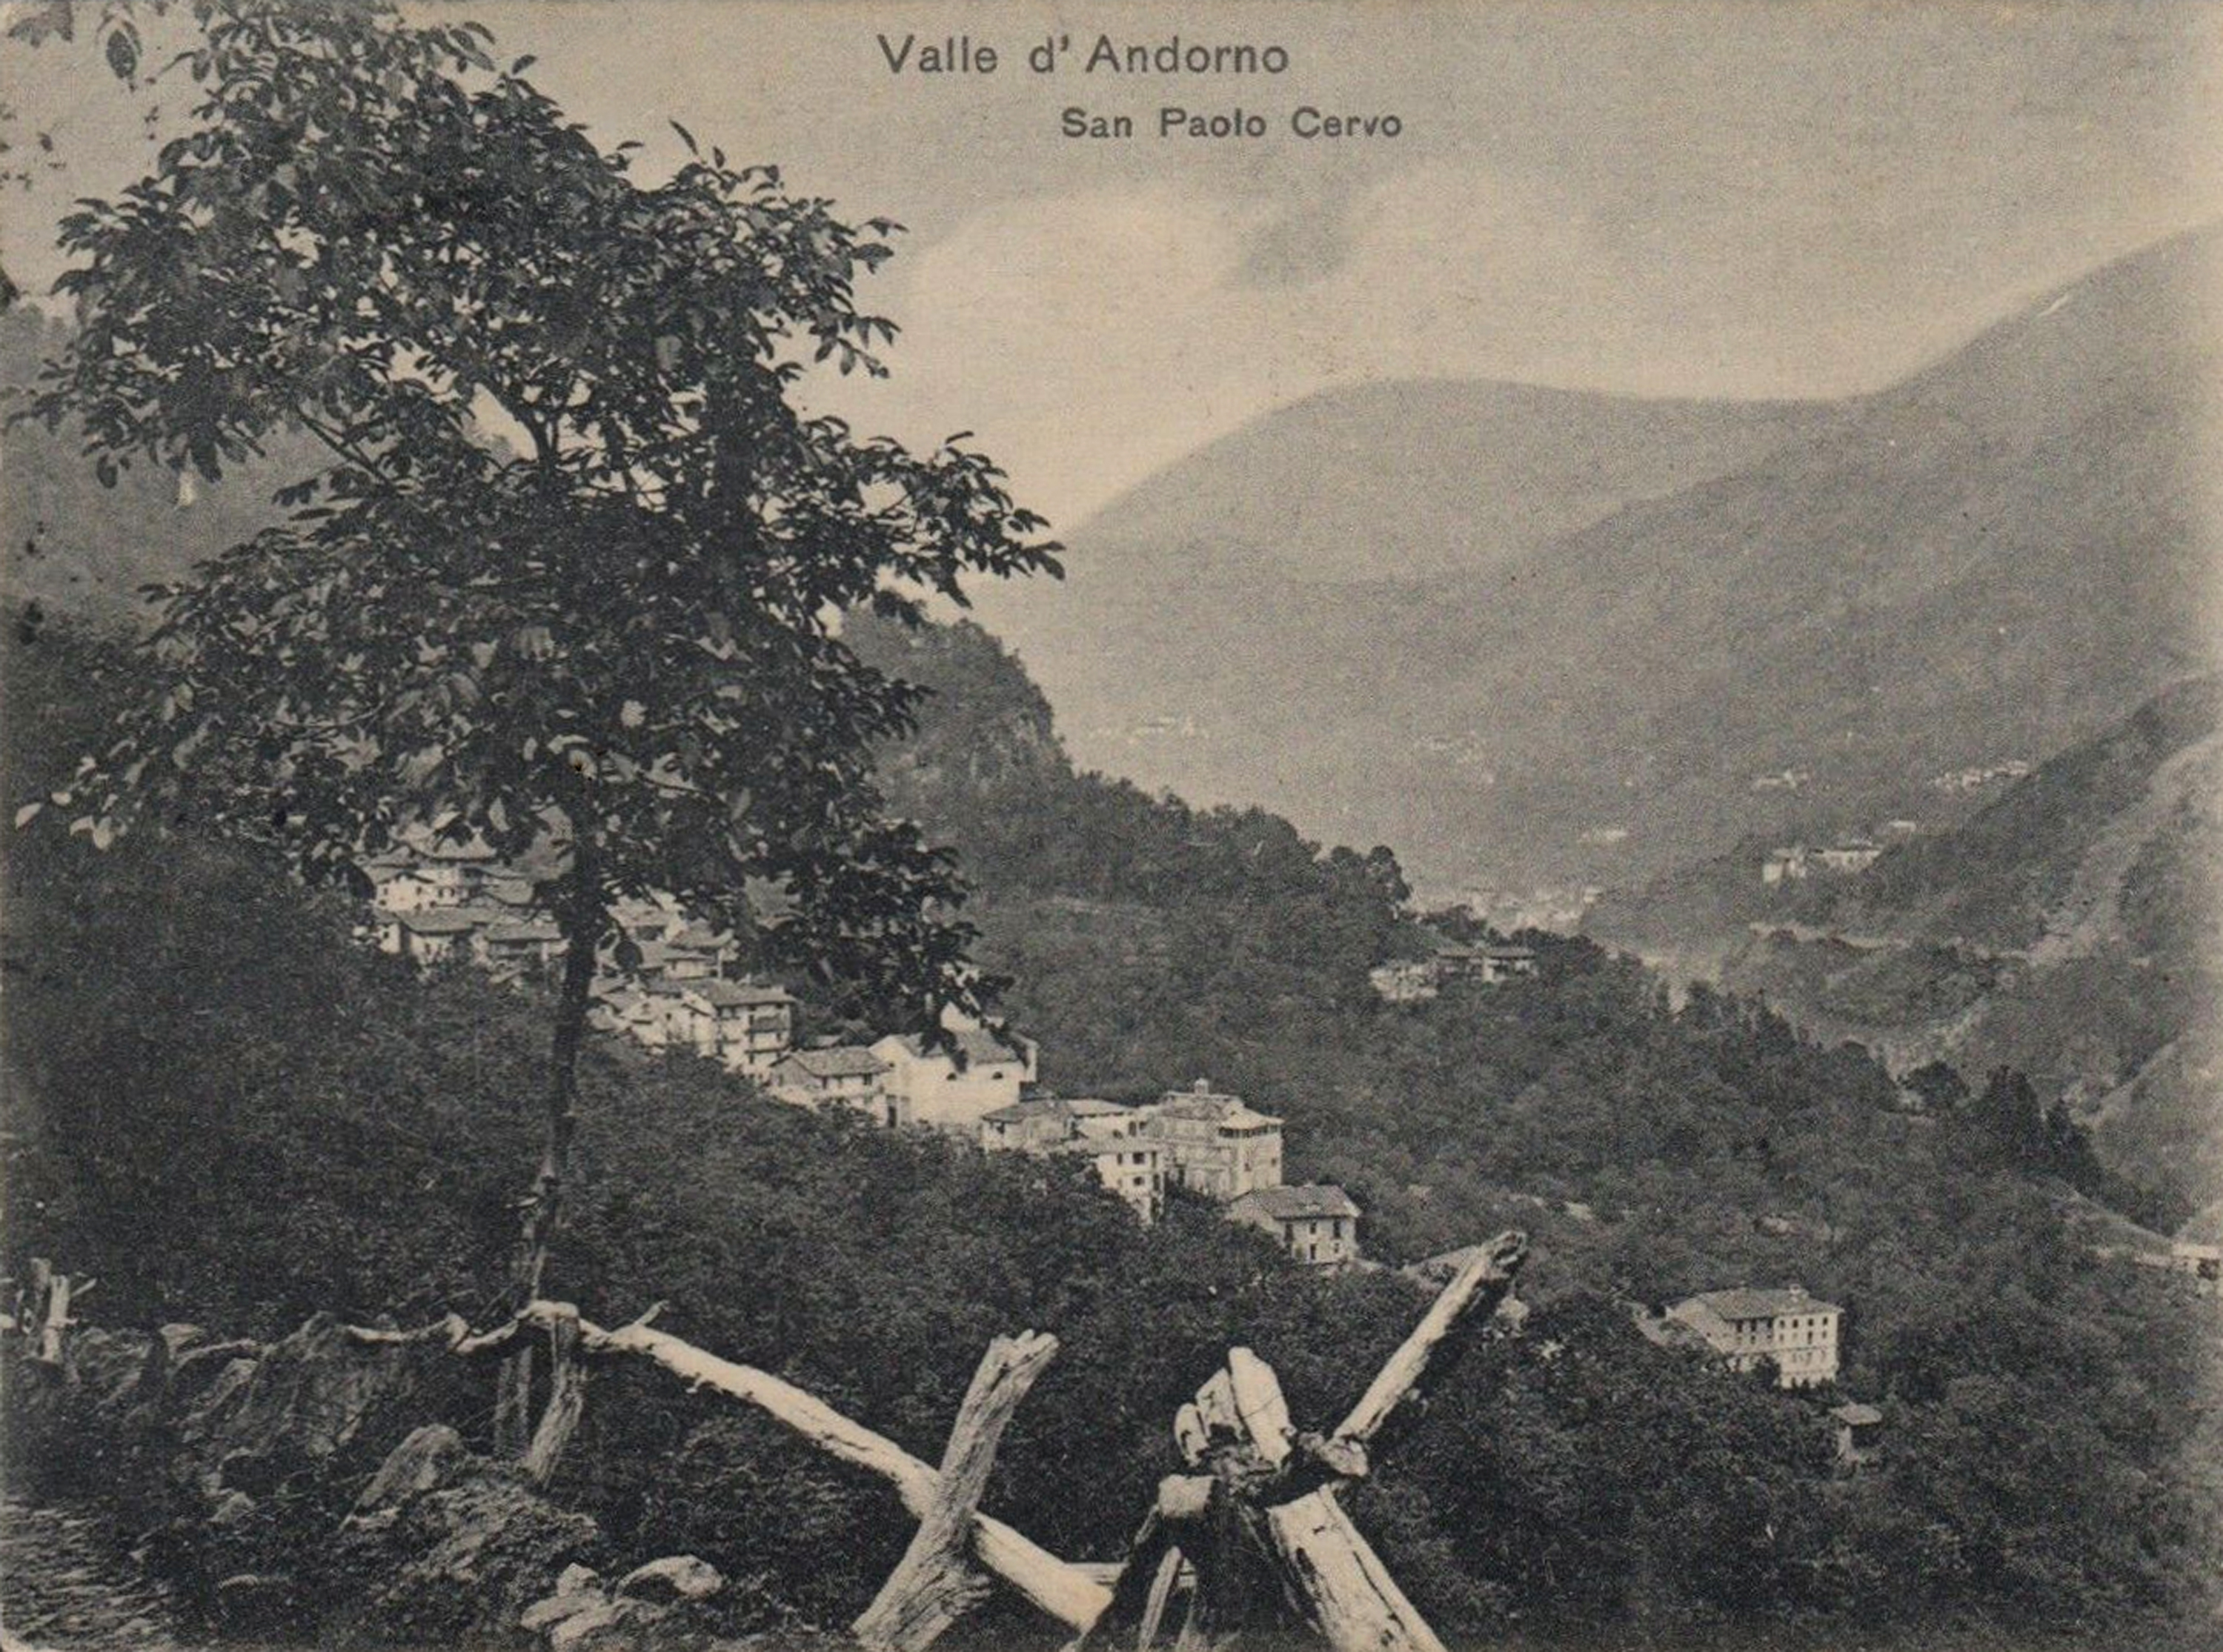 San Paolo Cervo all’inizio del Novecento in una cartolina d’epoca.